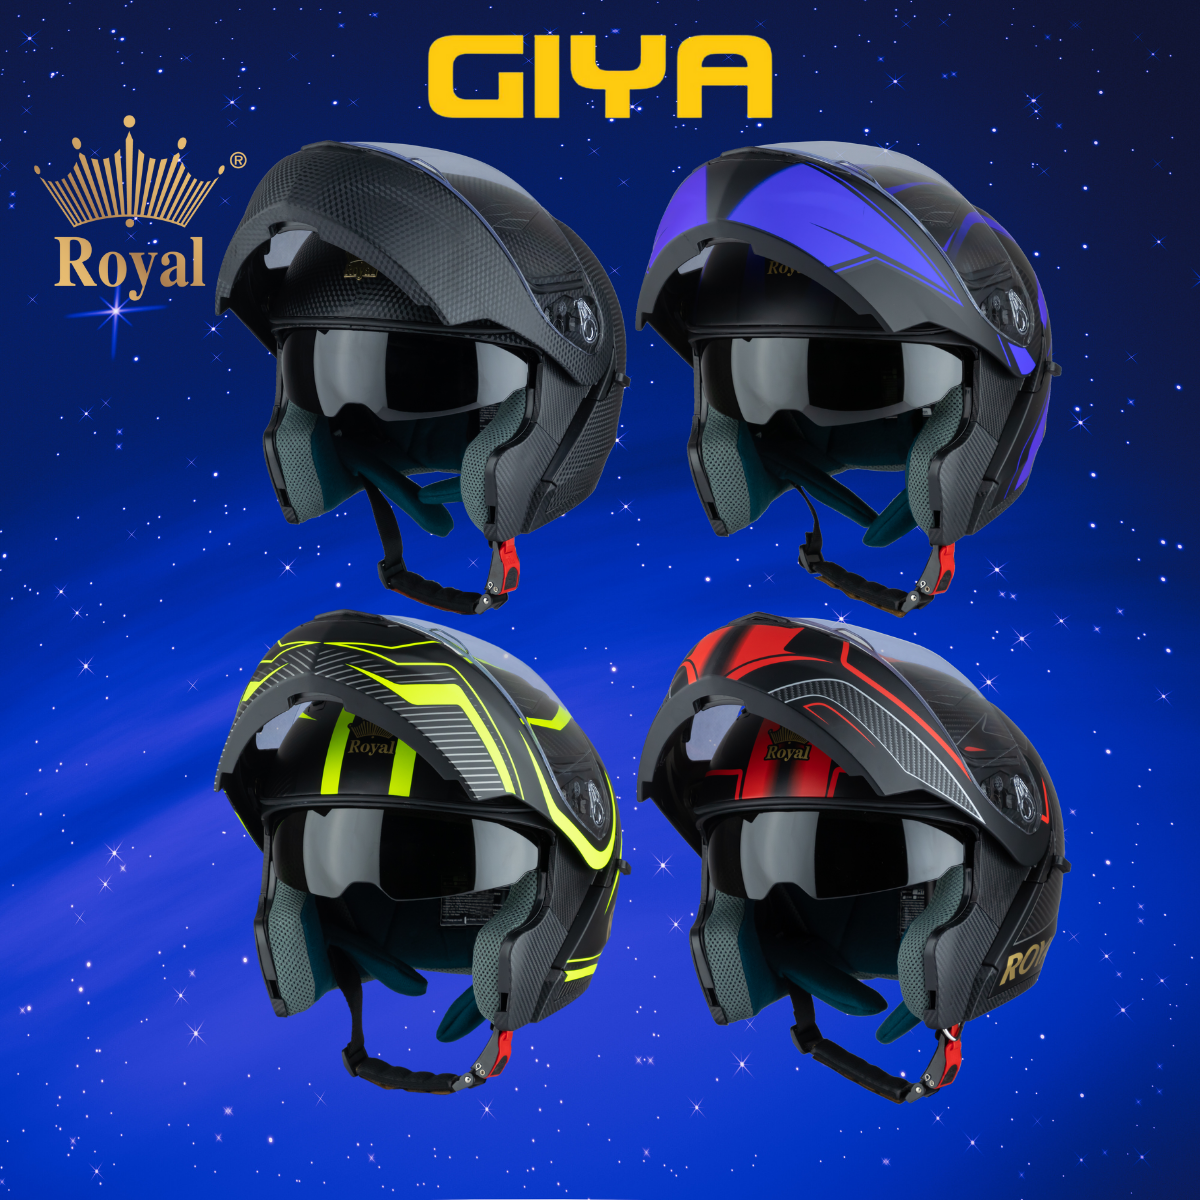 Nón Bảo Hiểm Royal  M179 Lật Cằm Fullface 2 Kính Tem Màu Nổi Bật, Bảo Hành 12 Tháng - Giya Helmet